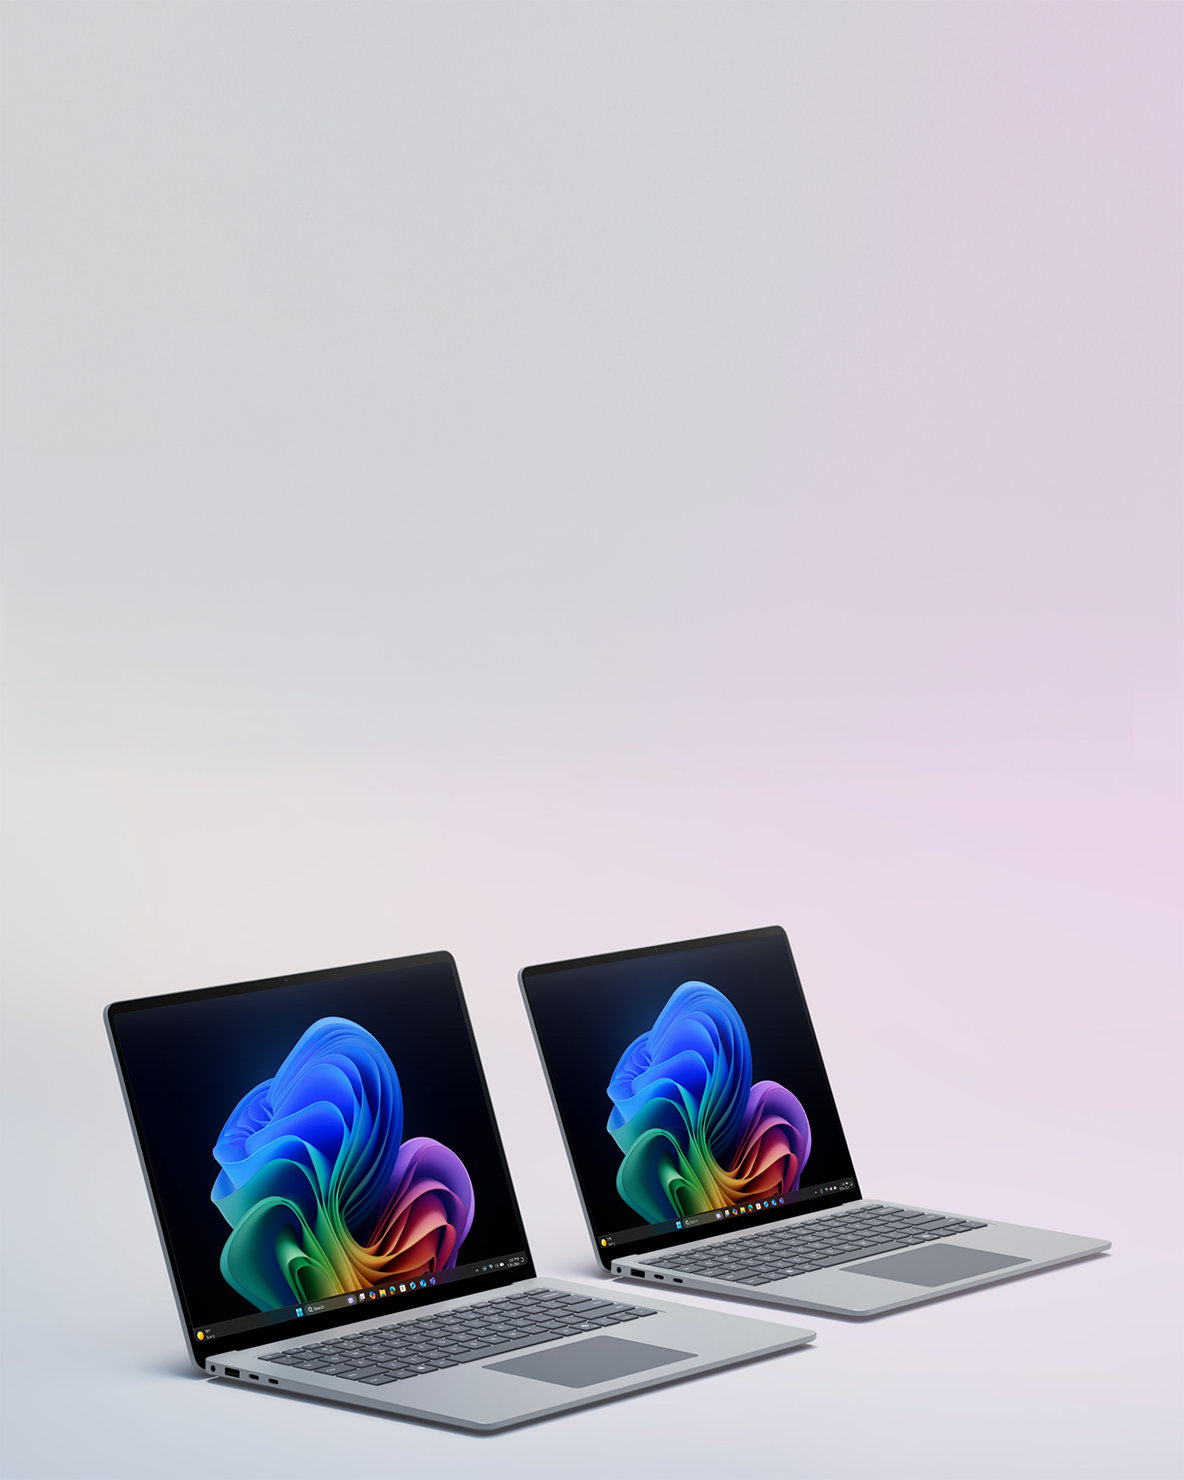 Une image de deux appareils Surface Laptop côte à côte